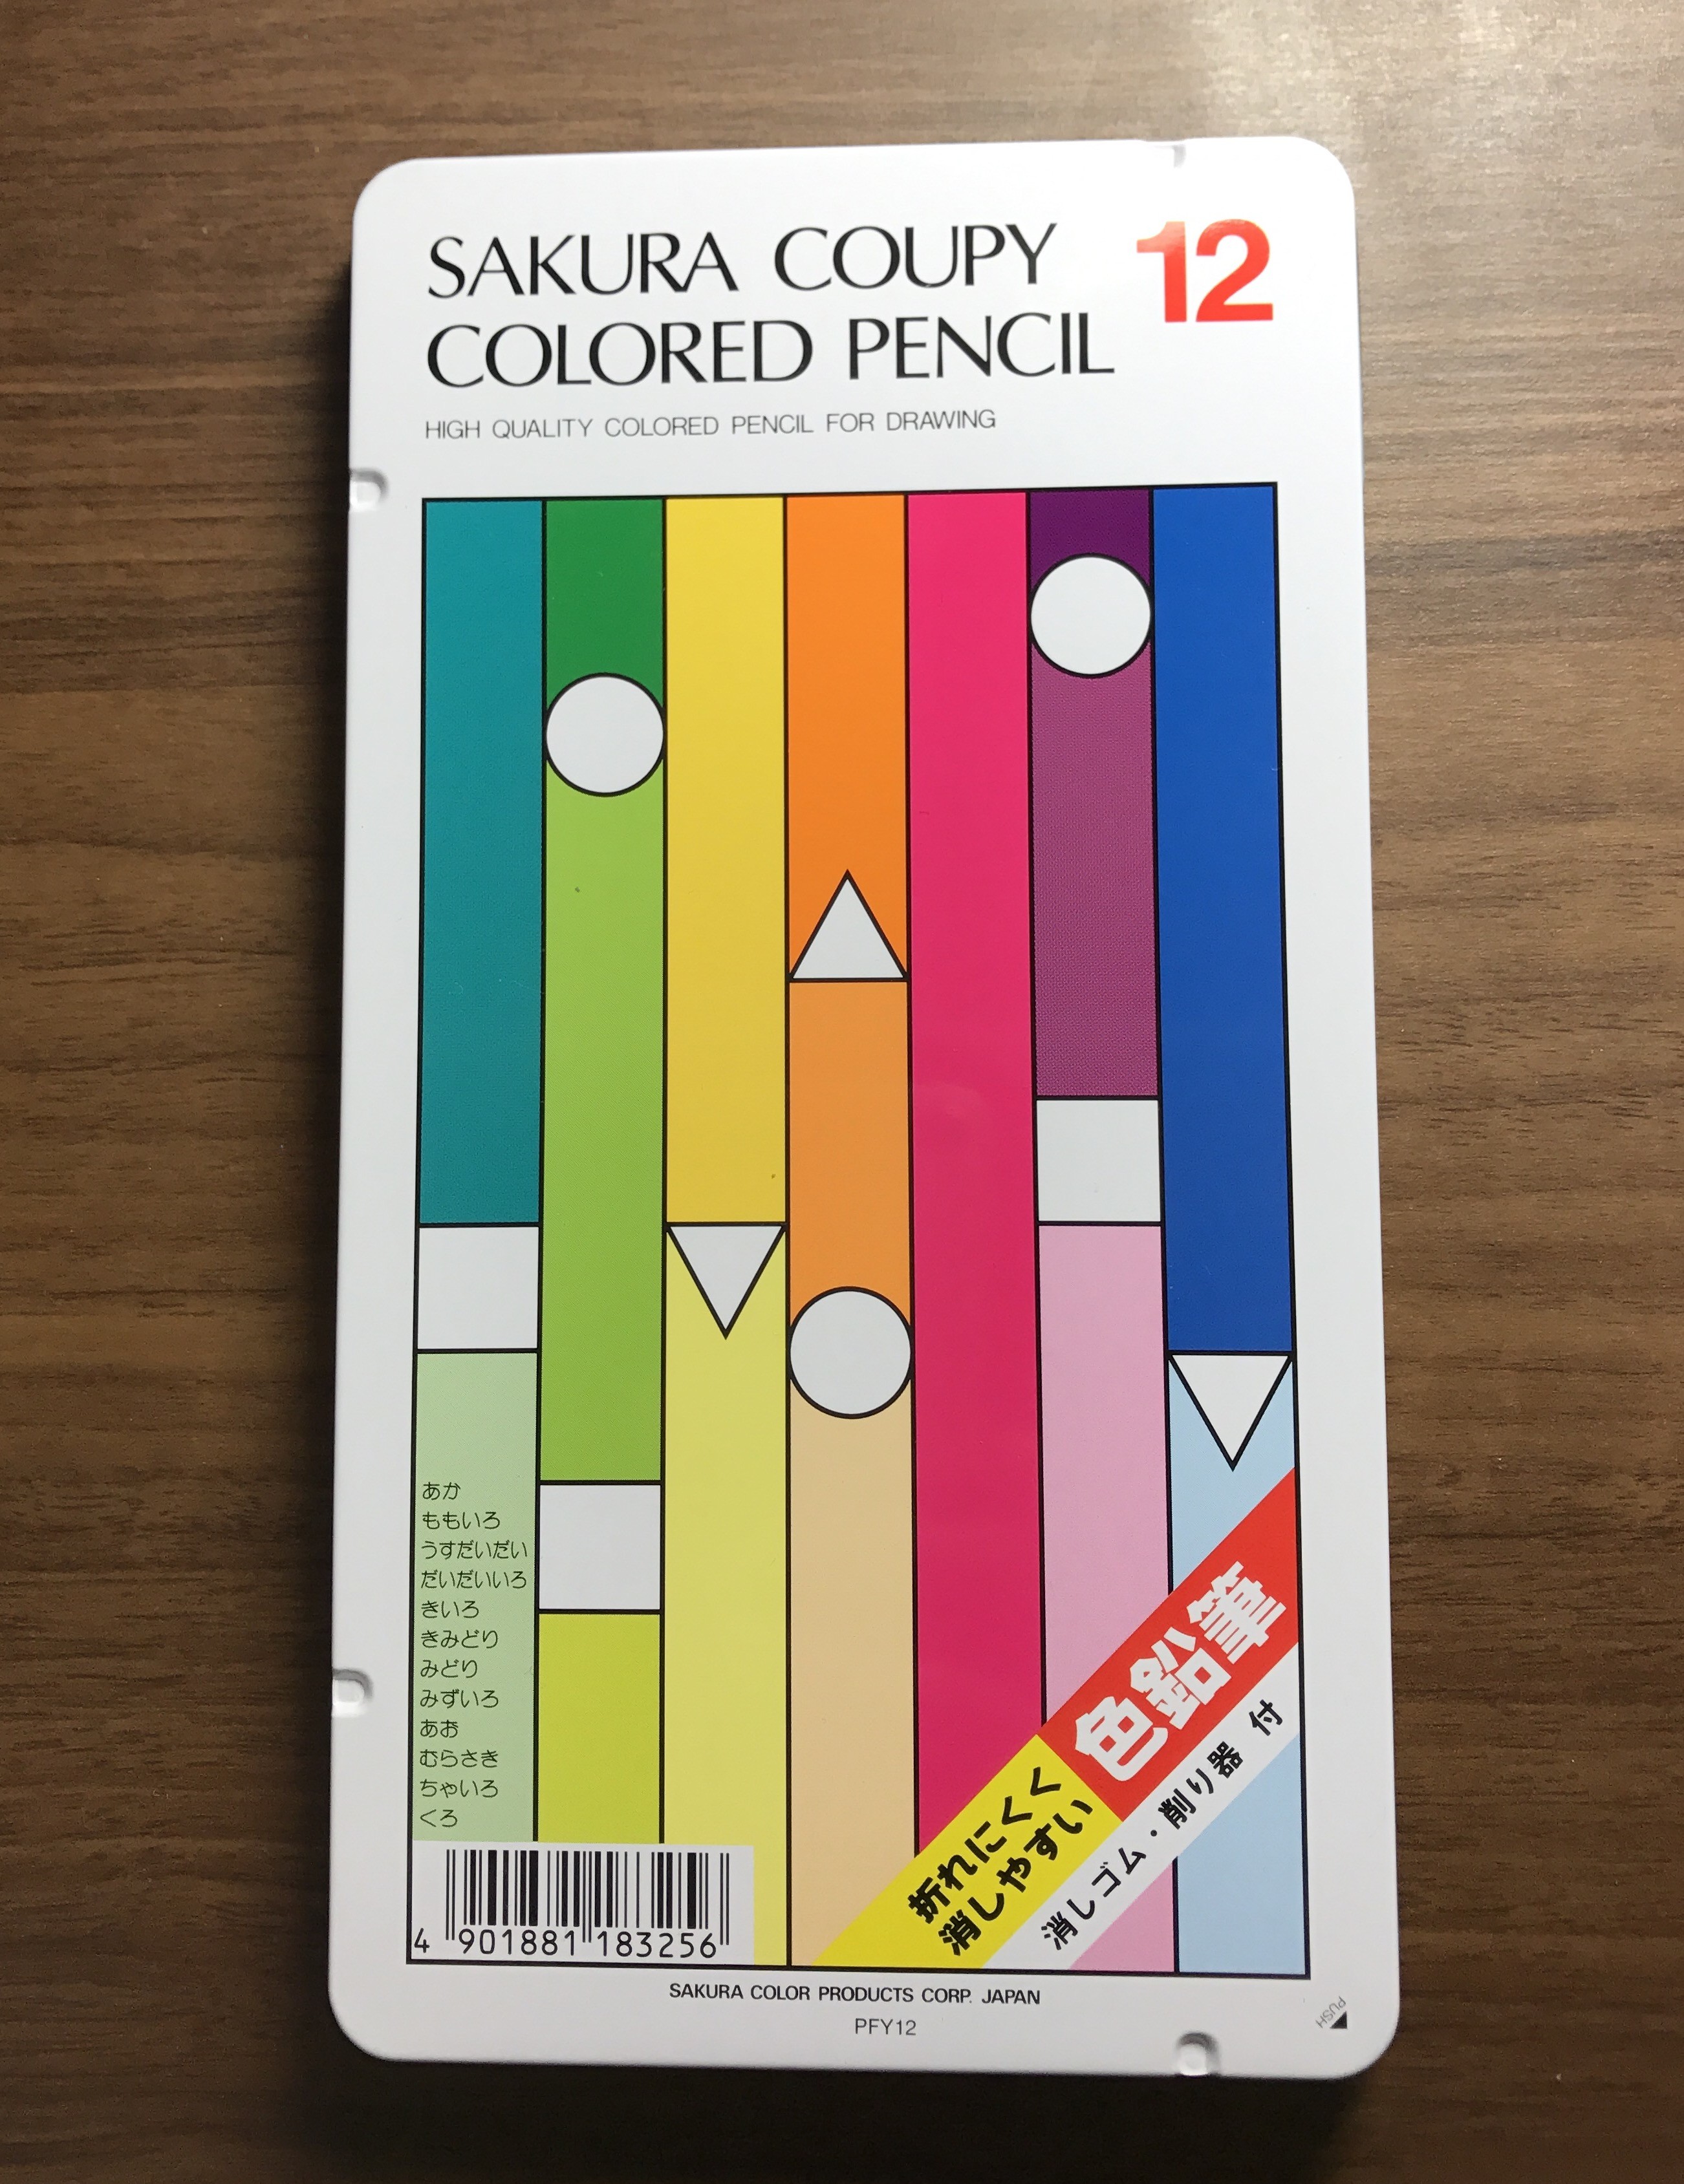 持っている色鉛筆 使ったことのある色鉛筆 休日は色鉛筆